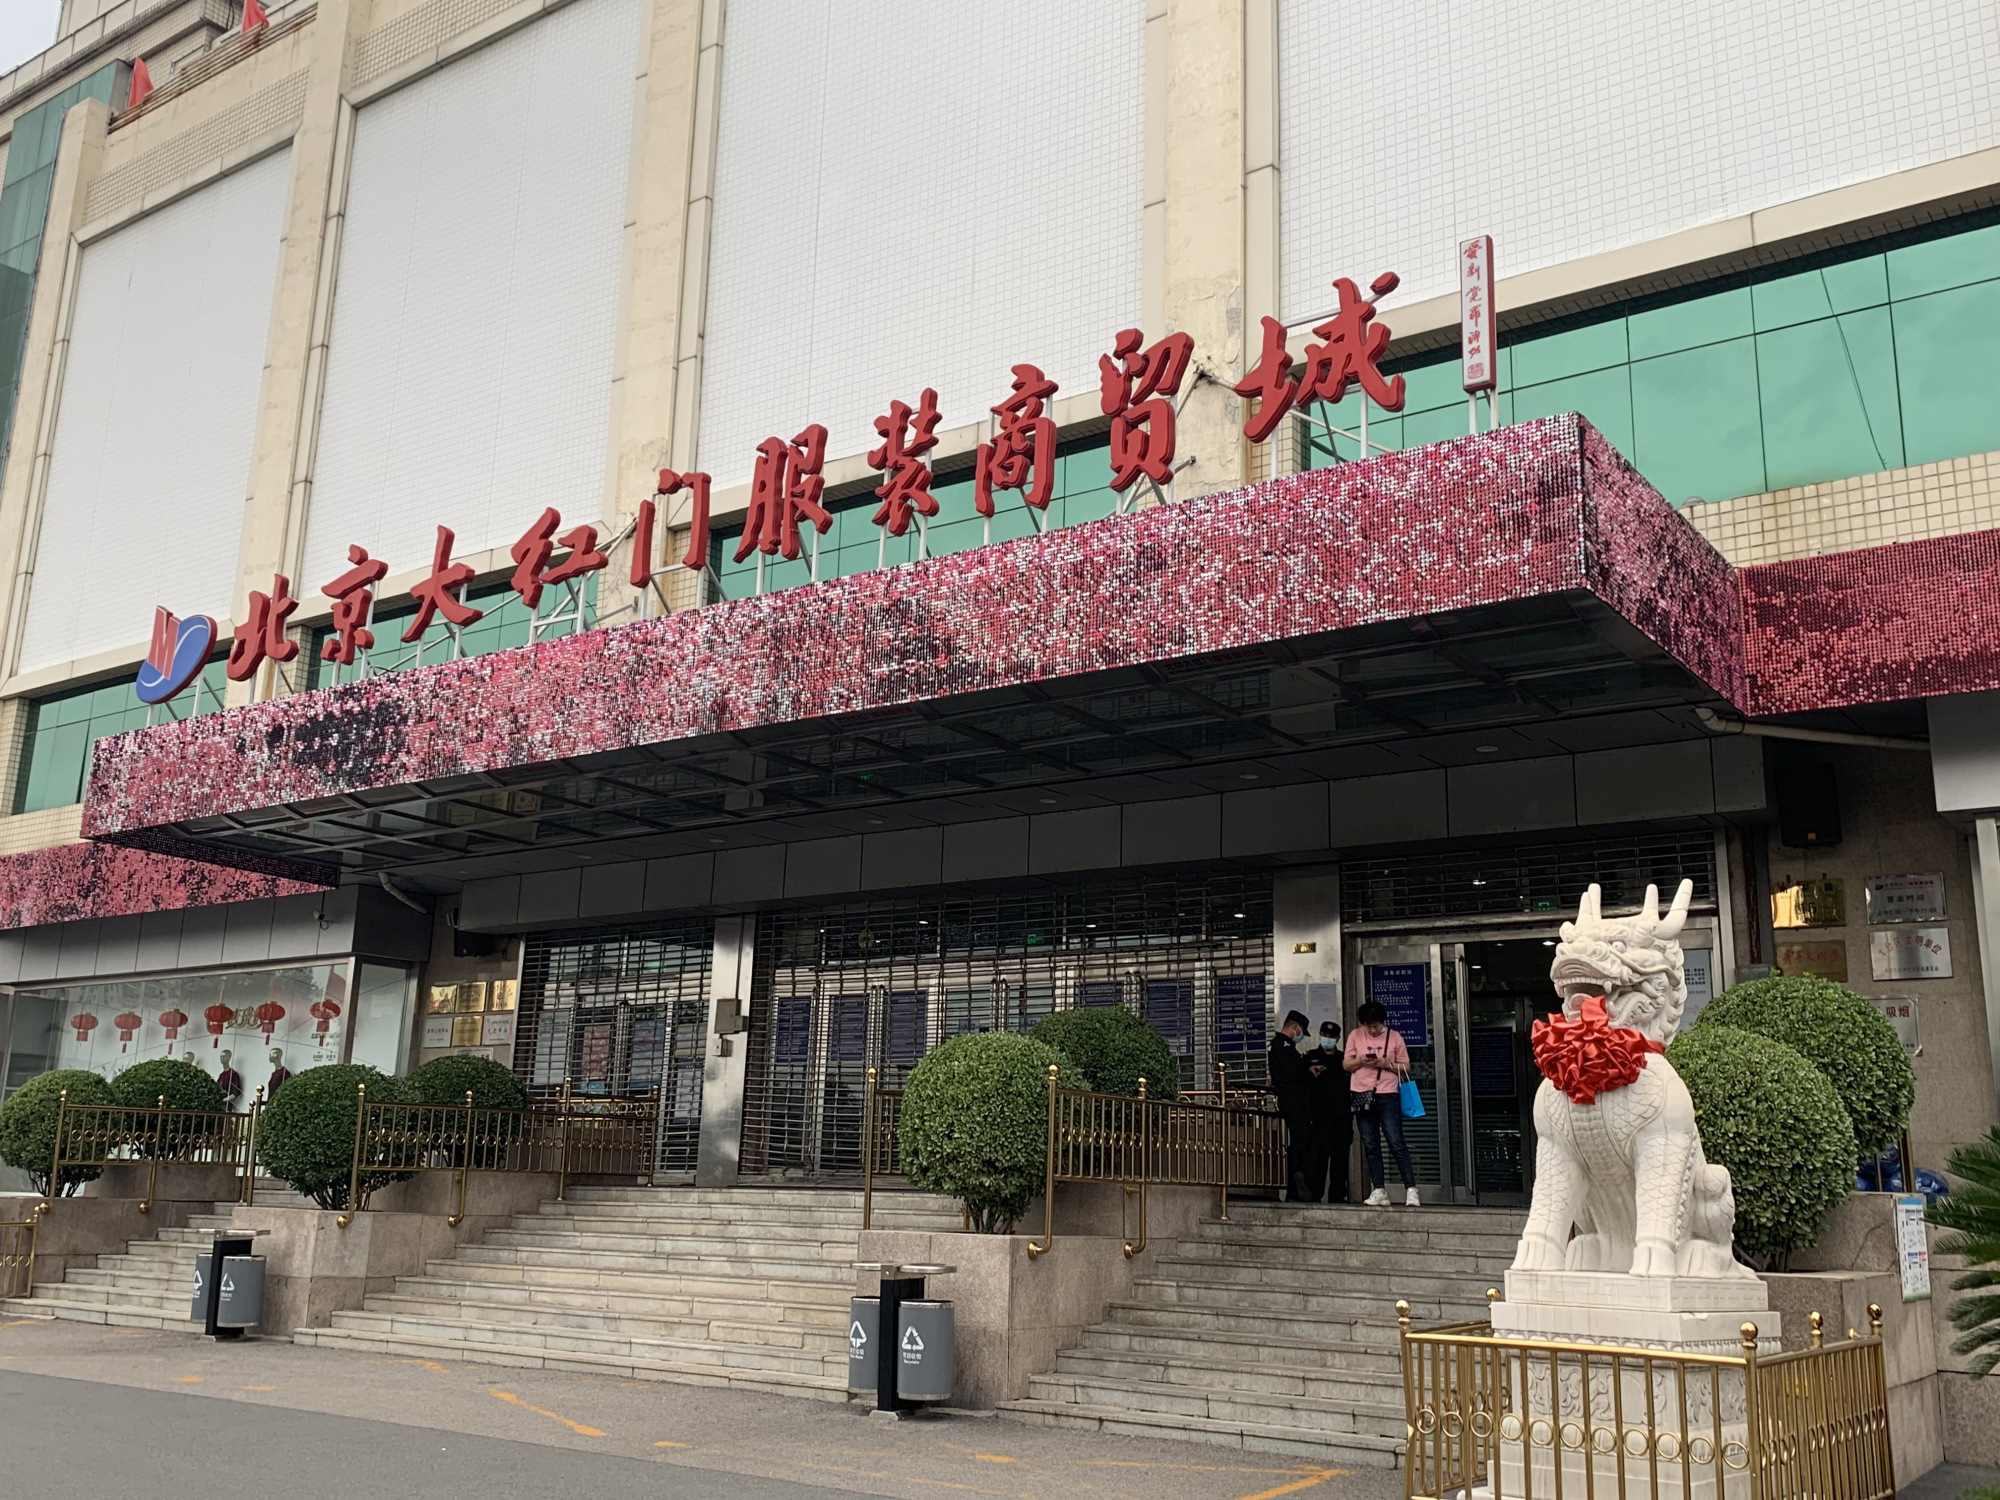 北京大红门服装商贸城即将关停,北方最大服装批发集散地将迁往河北